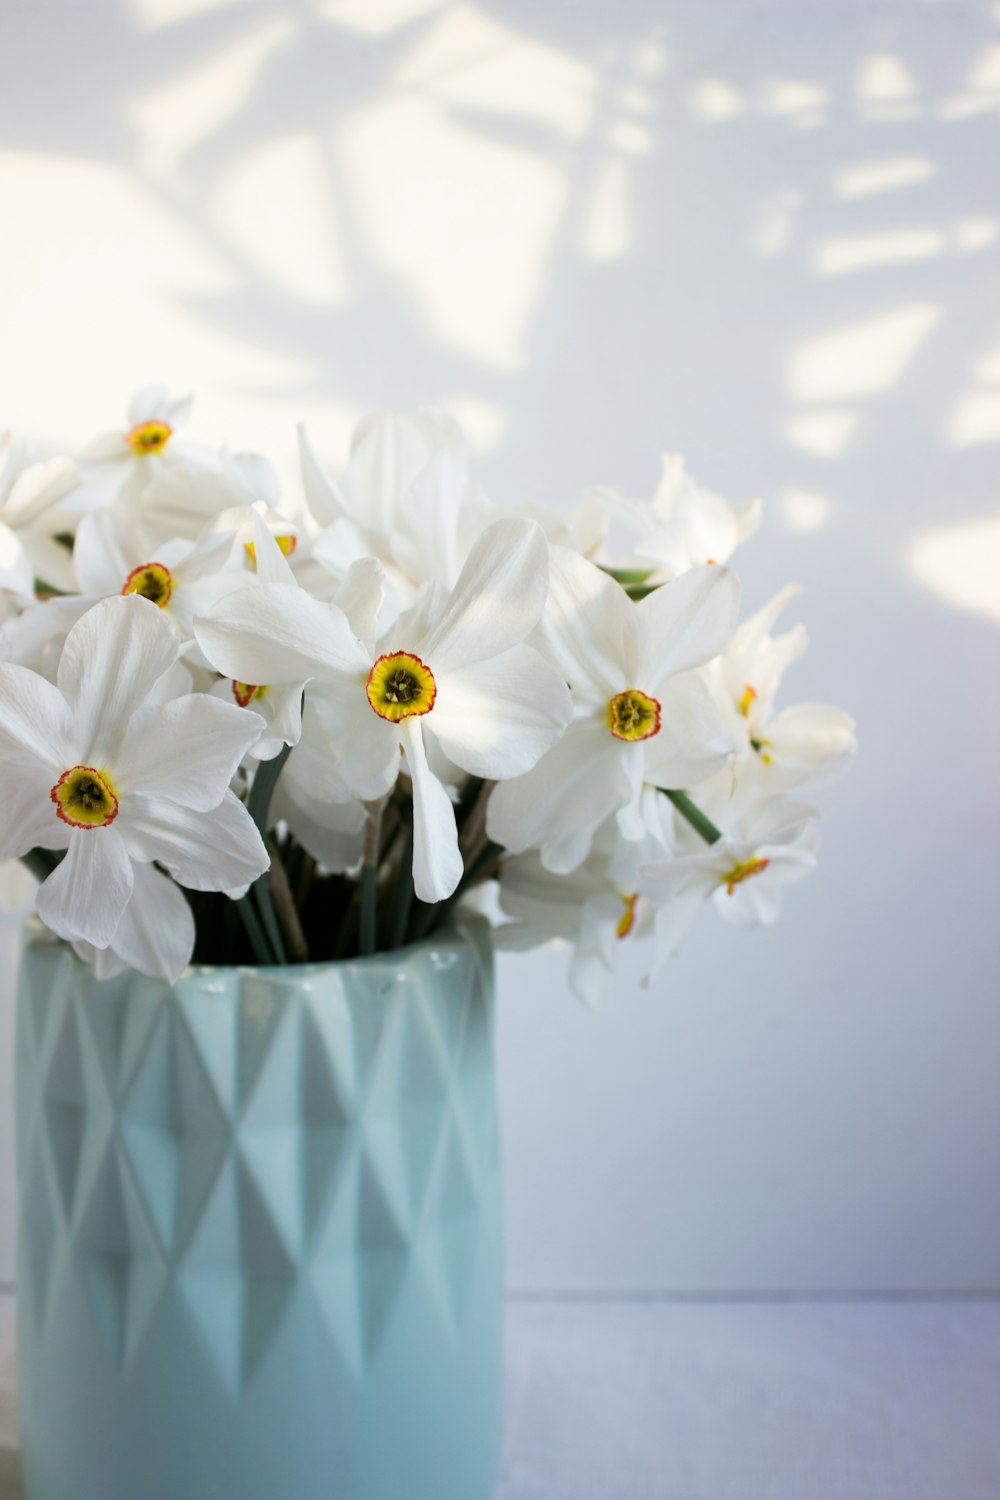 青と白の市松模様の花瓶に白い花